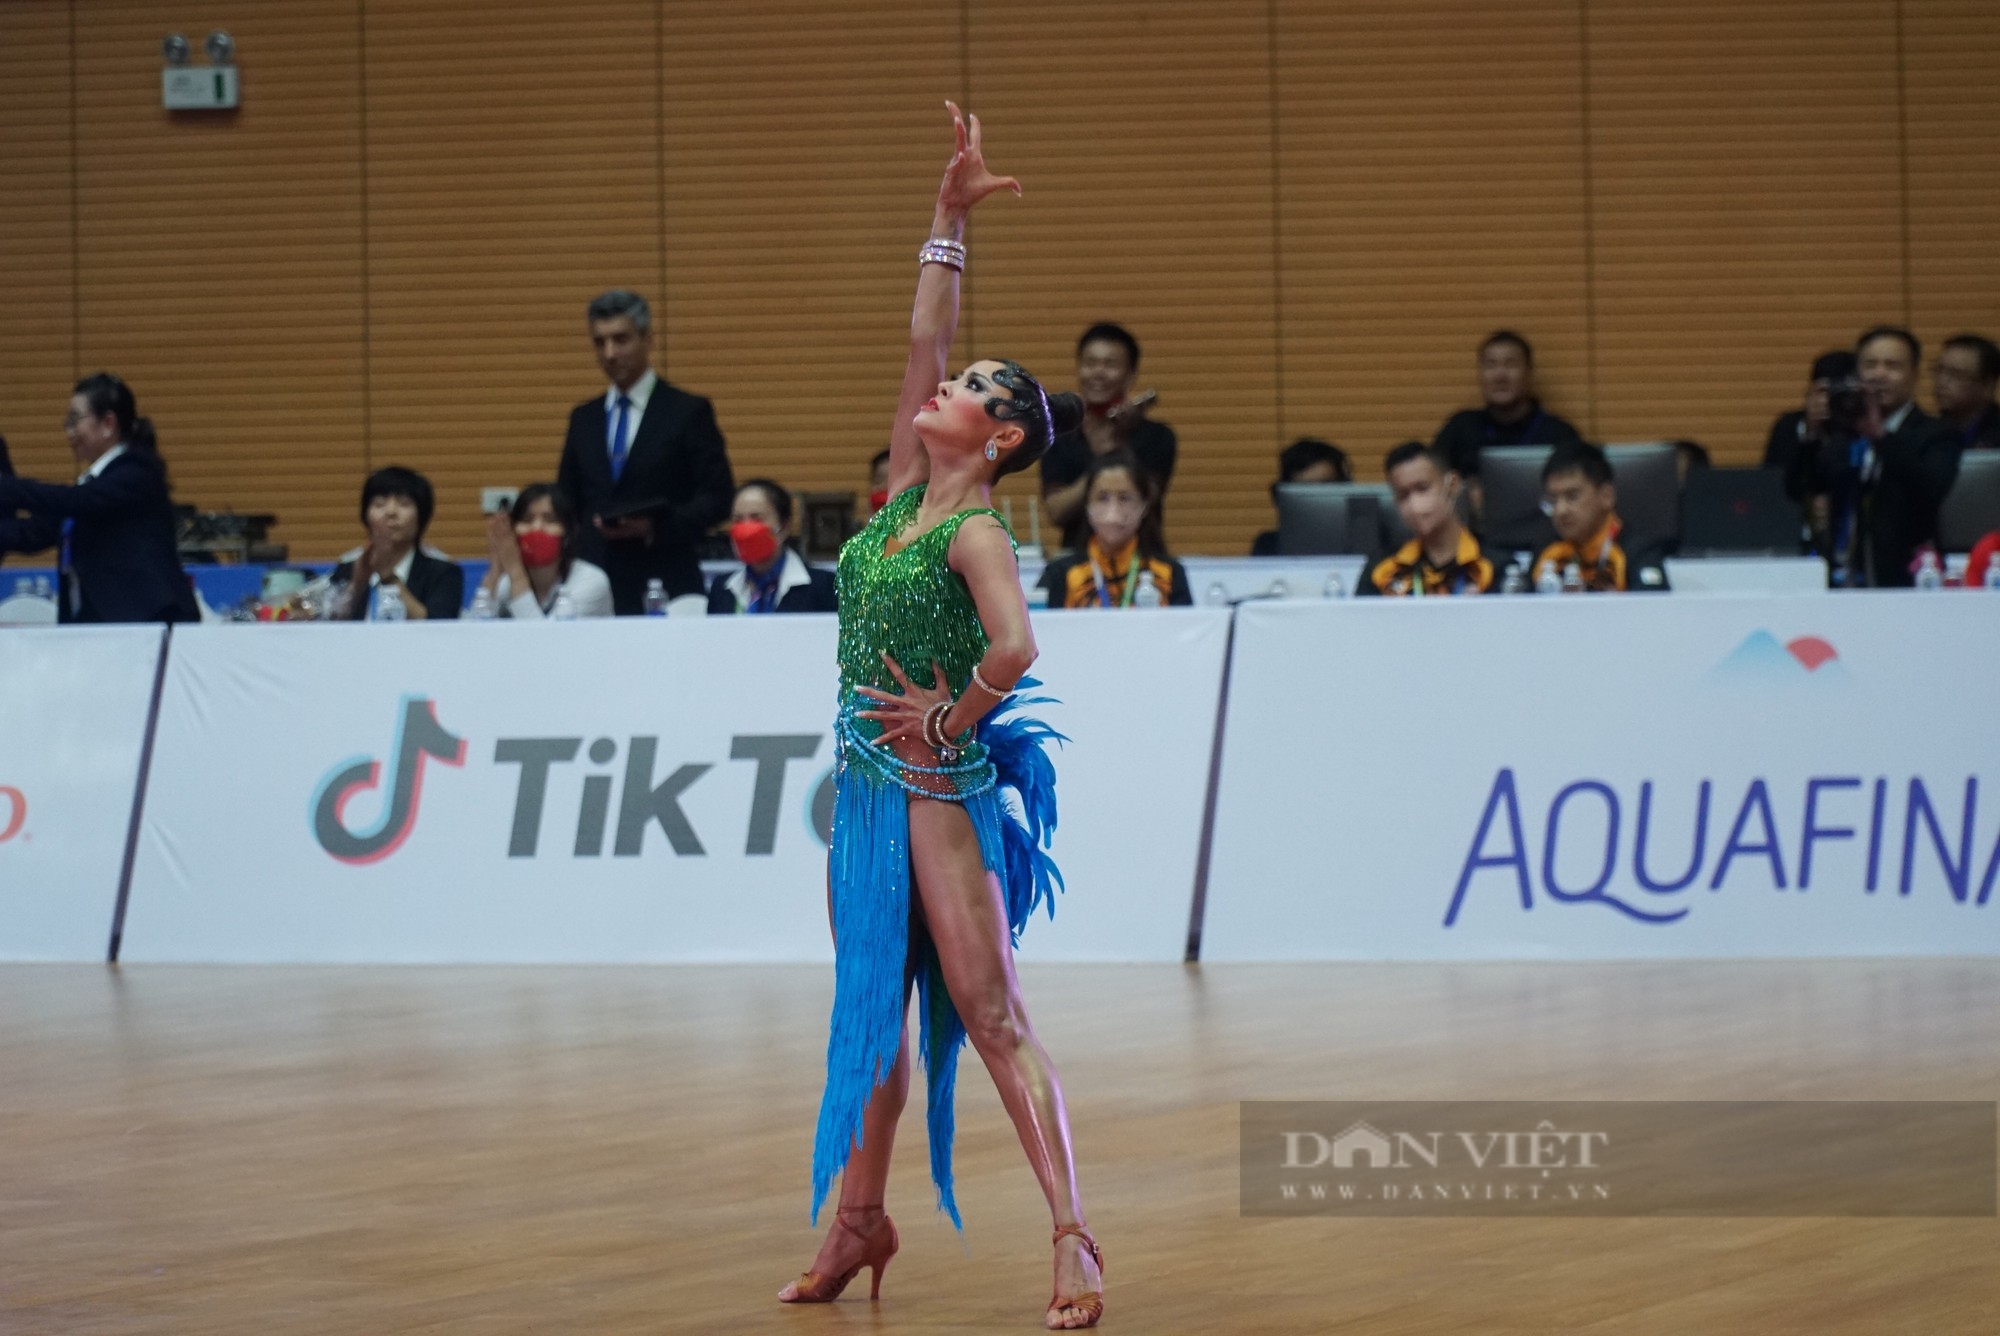 Người đẹp Dancesport giành 3 HCV tại kỳ SEA games đầu tiên tham dự - Ảnh 8.